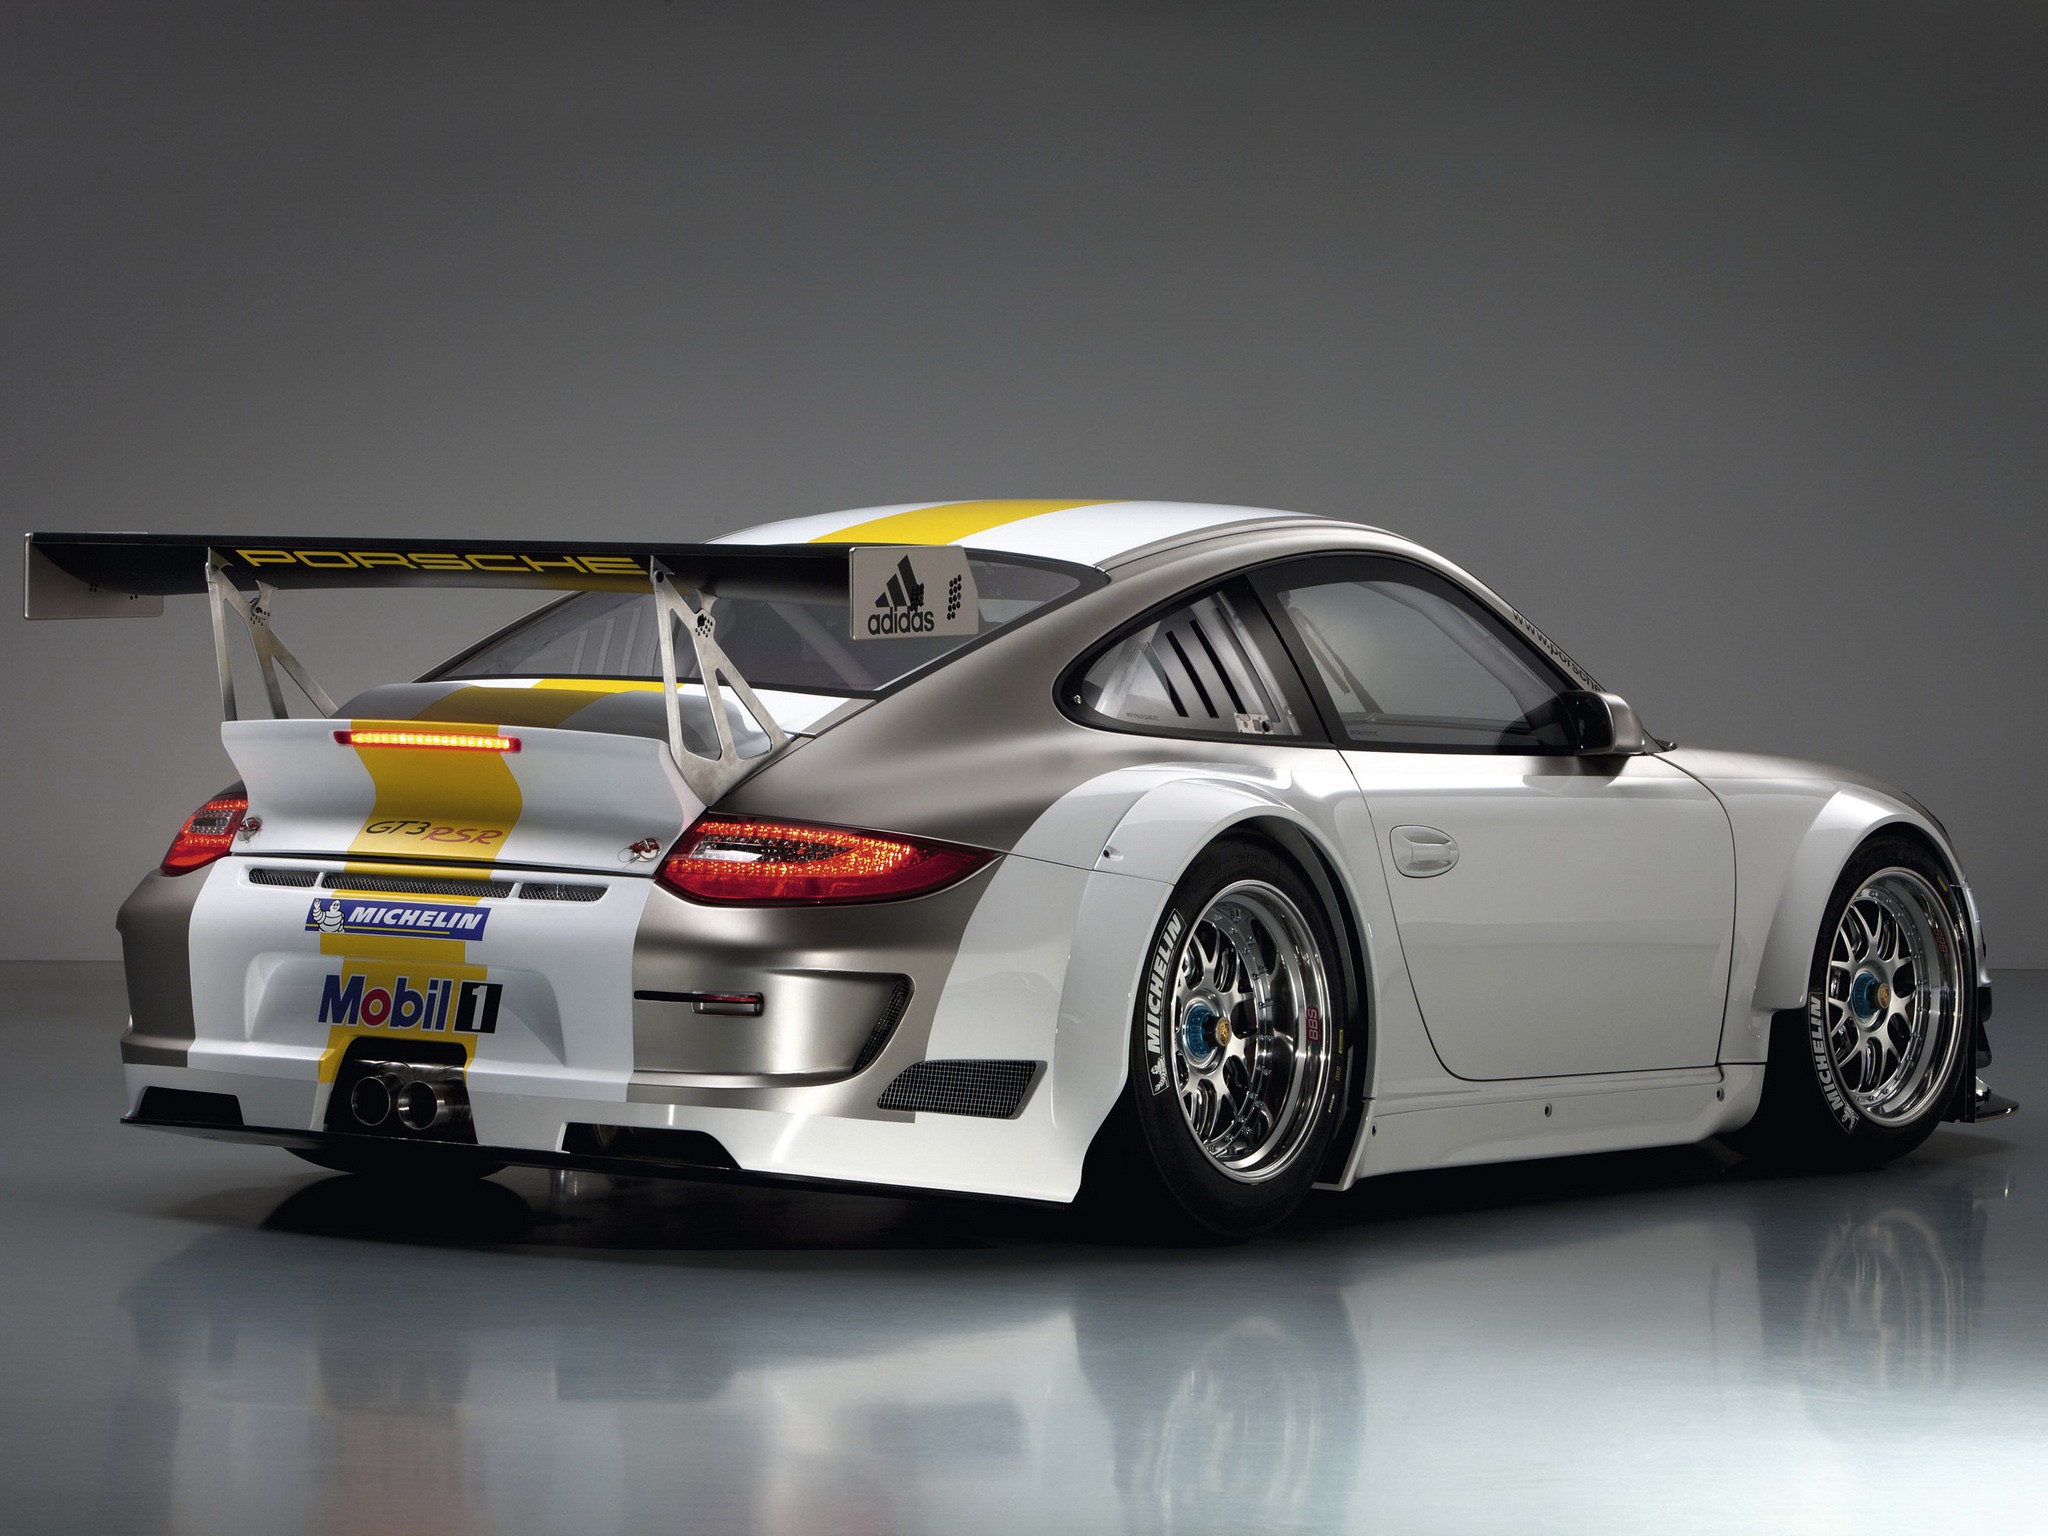 Porsche, cars, racing cars - desktop wallpaper